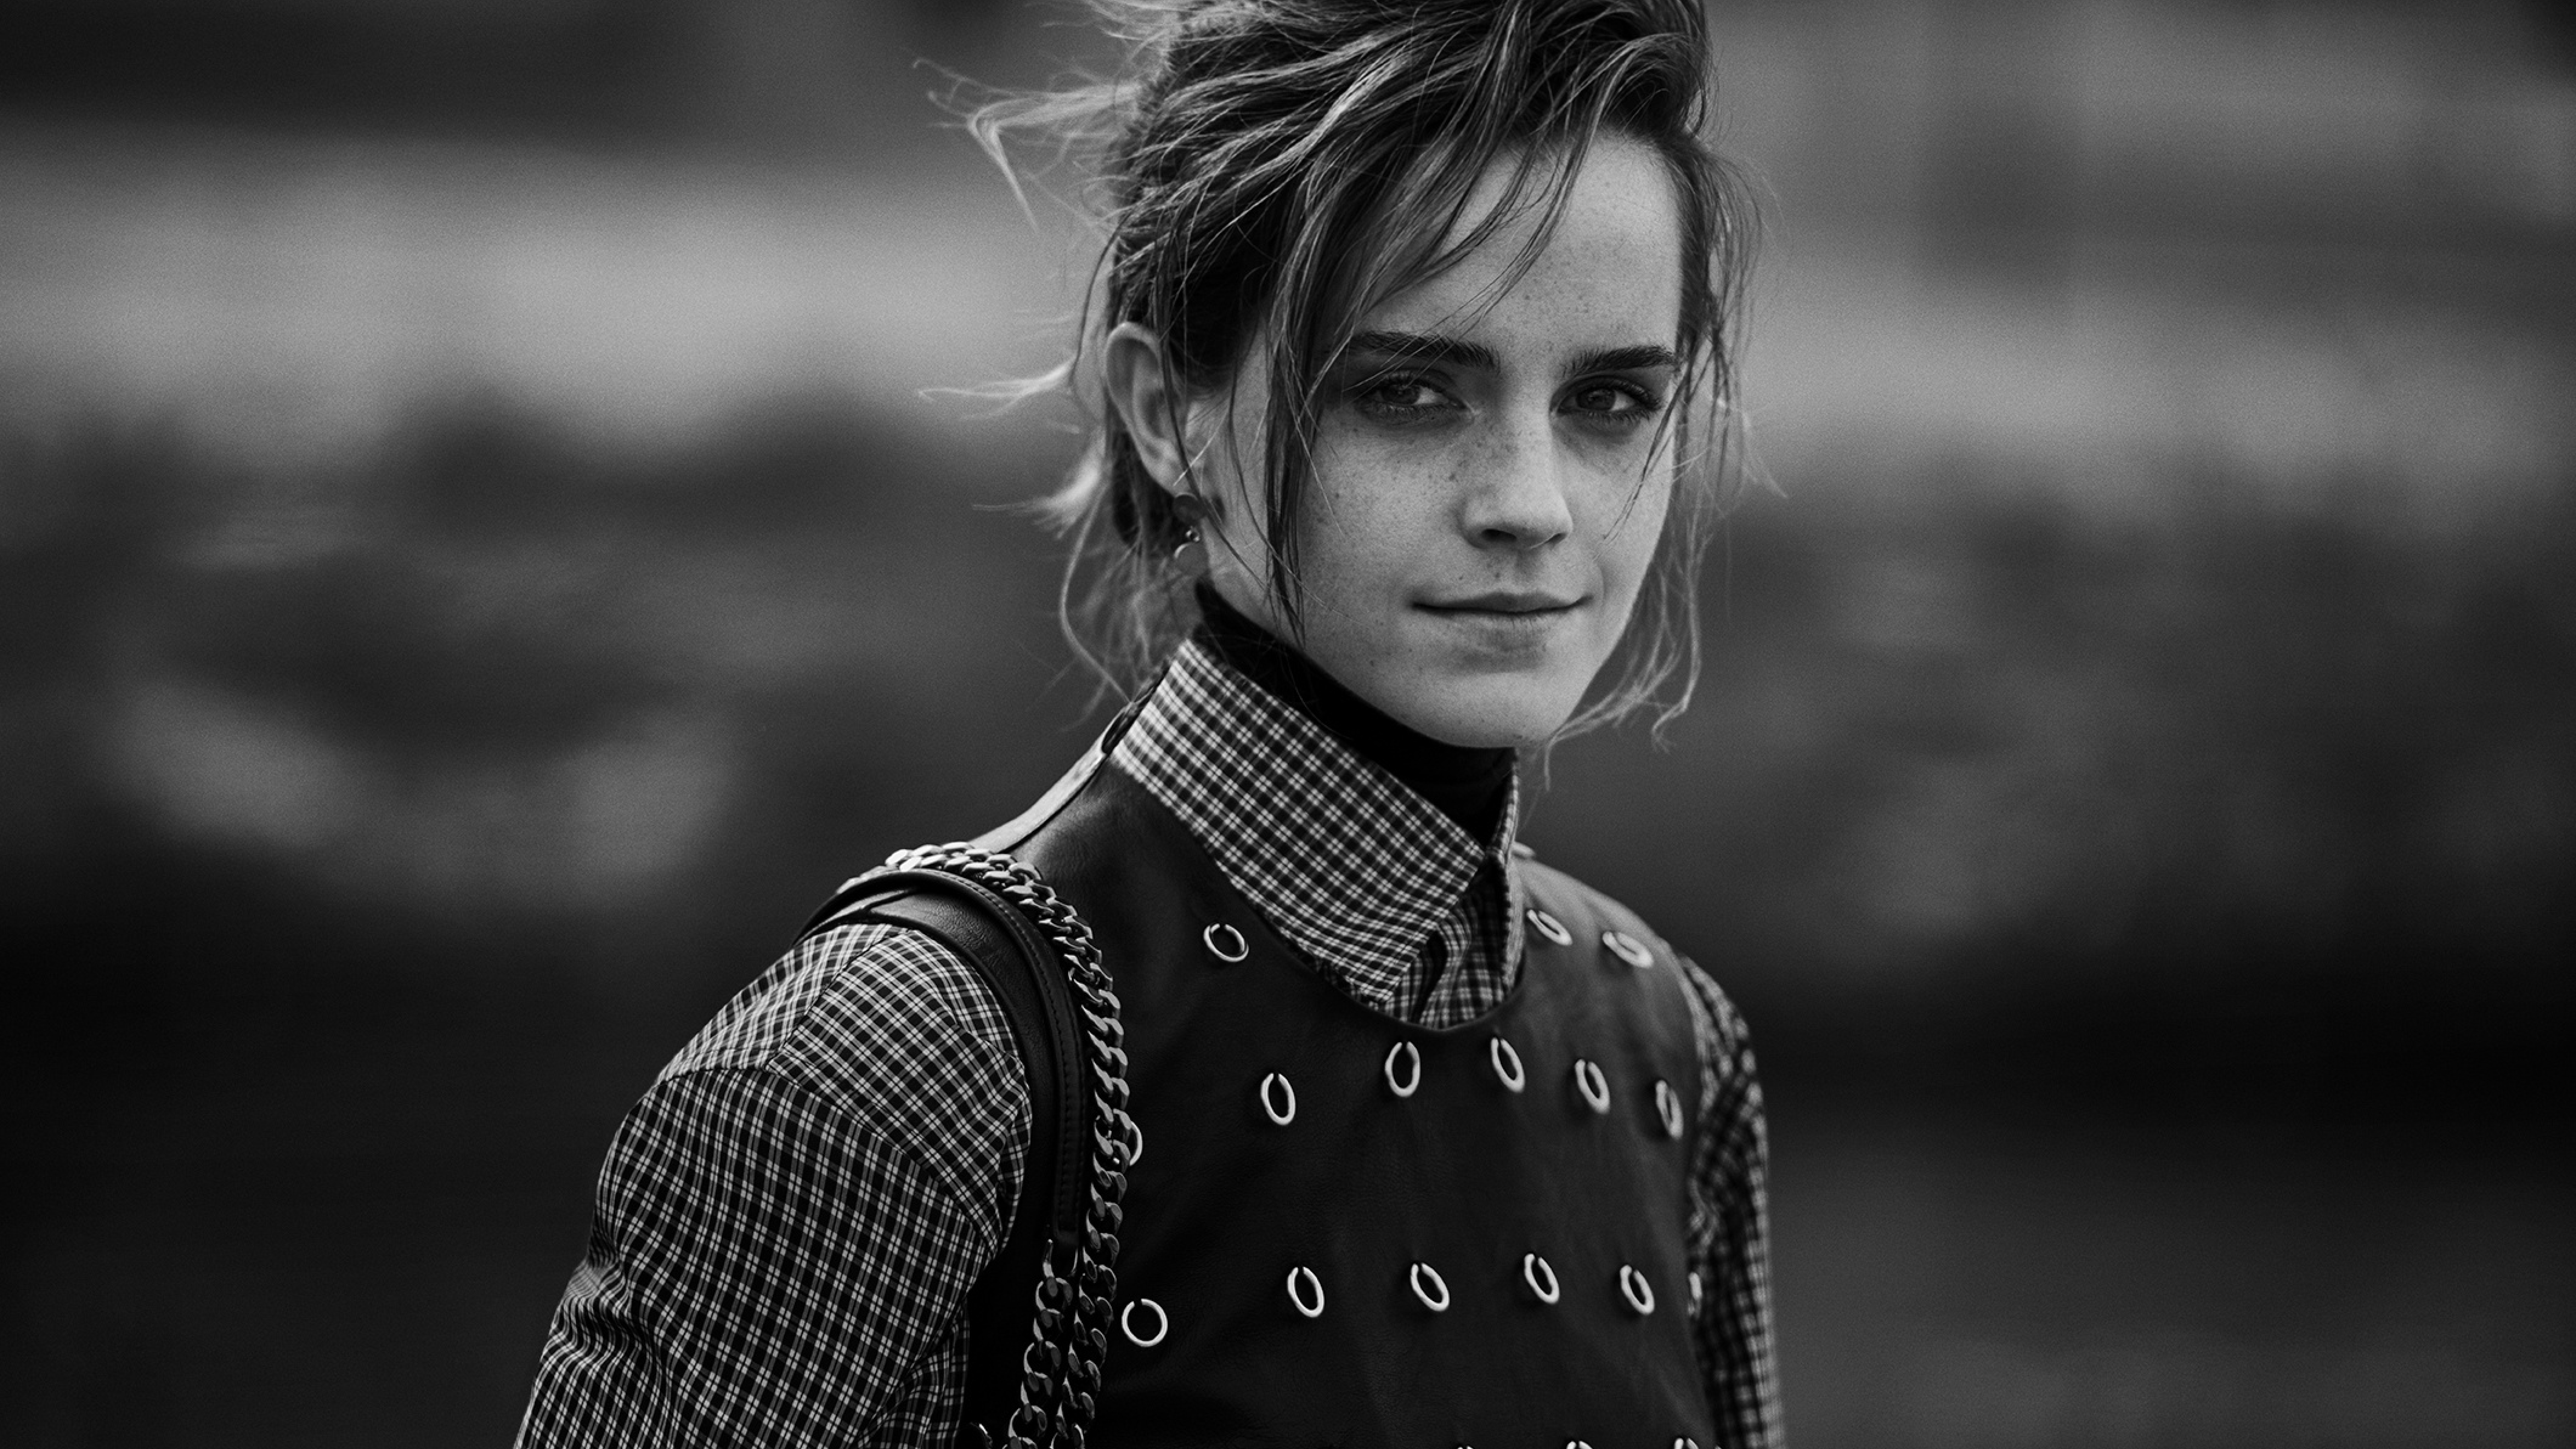 7680x4320 Emma Watson Monochrome Portrait 8K Wallpaper, HD ...